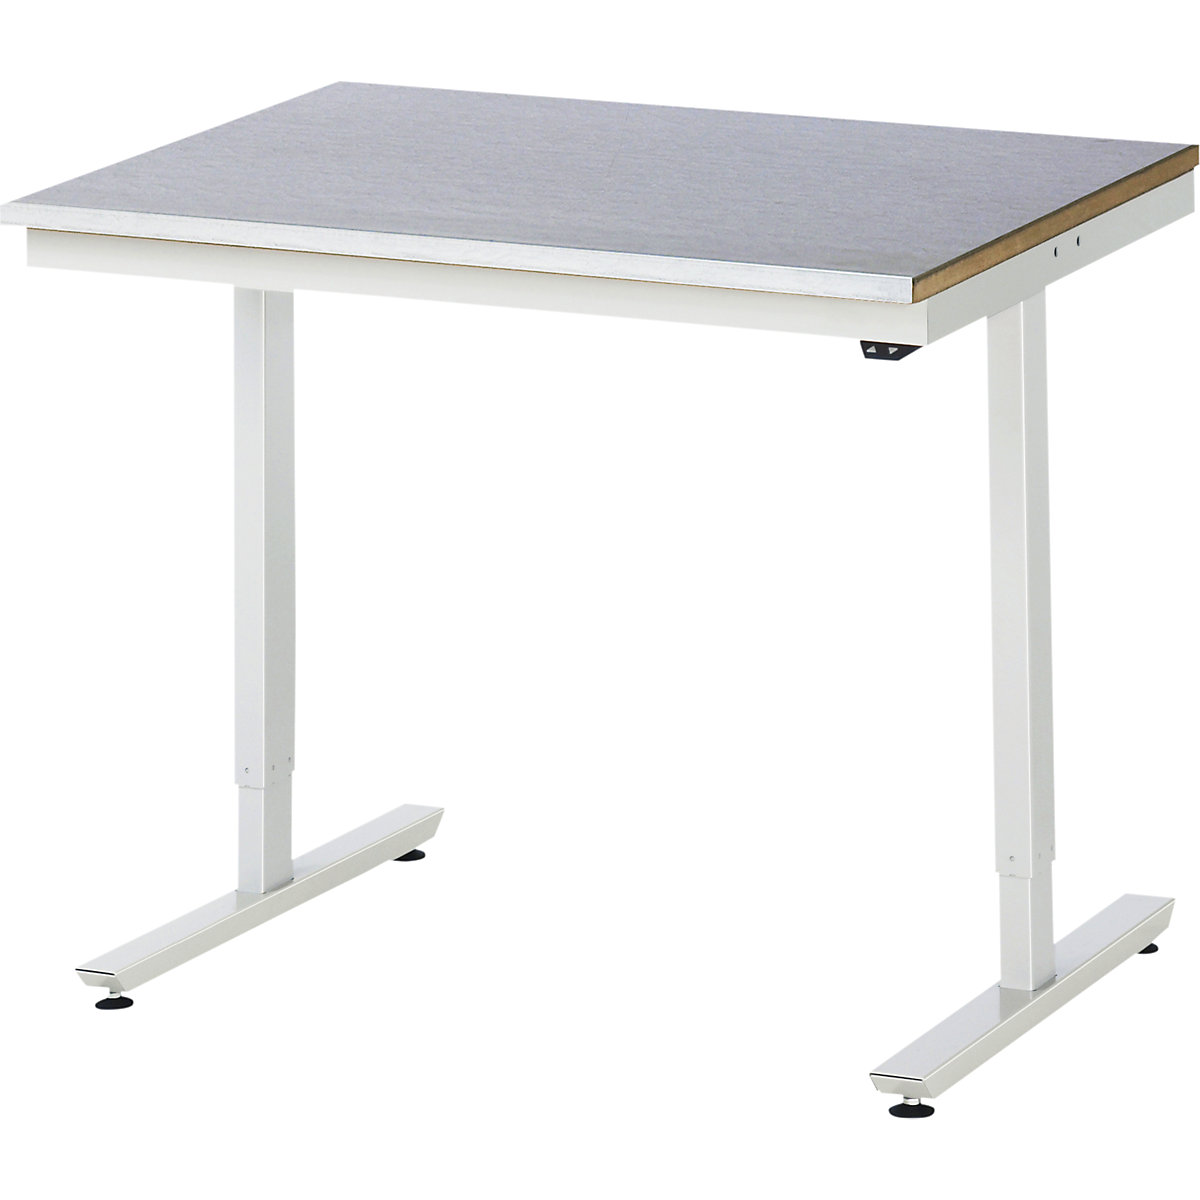 Psací stůl s elektrickým přestavováním výšky – RAU, ocelový povlak, nosnost 150 kg, š x h 1000 x 800 mm-5